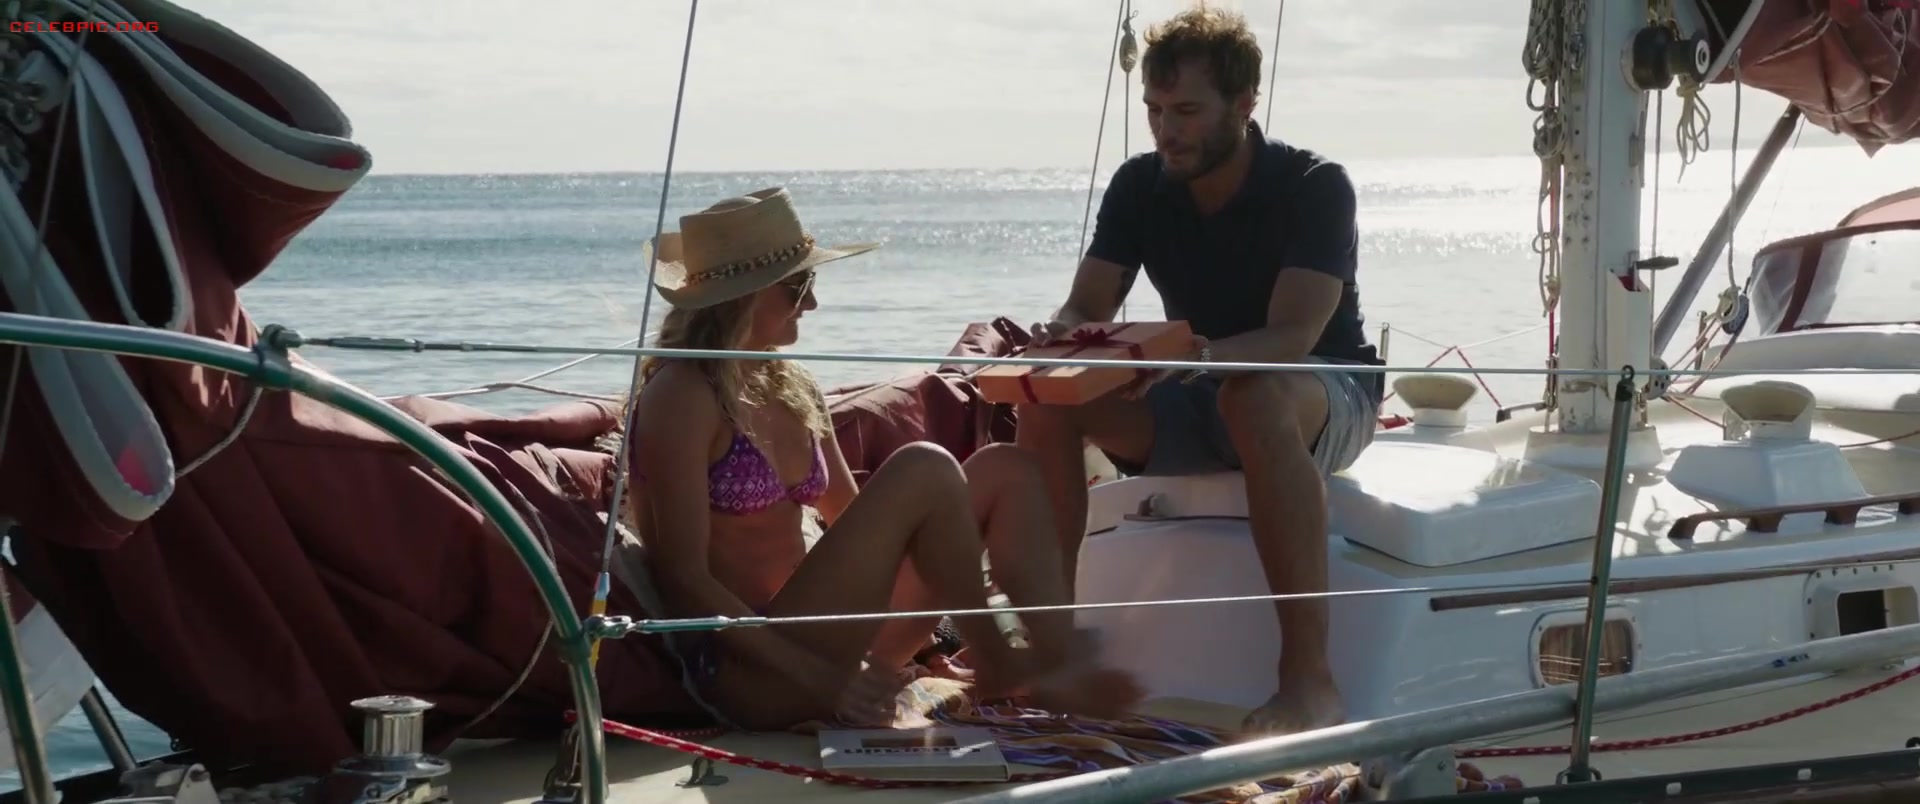 Shailene Woodley - Adrift 1080p (1) 0754.jpg